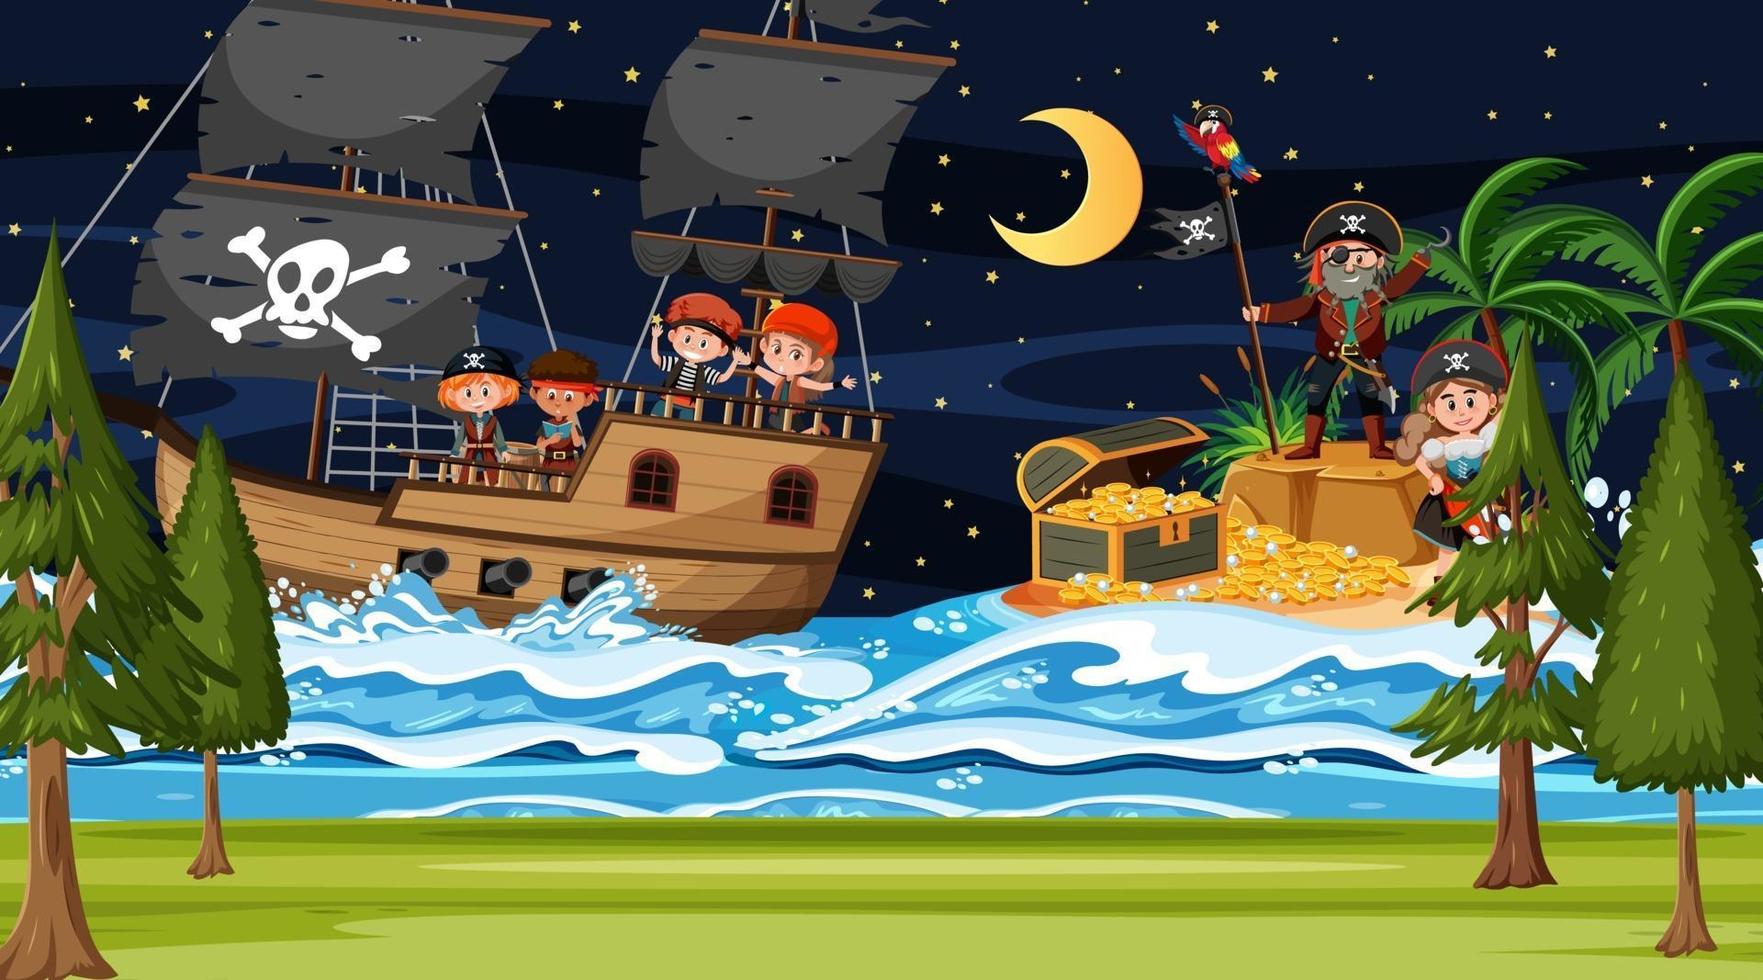 Scène d & # 39; île au trésor la nuit avec des enfants pirates sur le navire vecteur